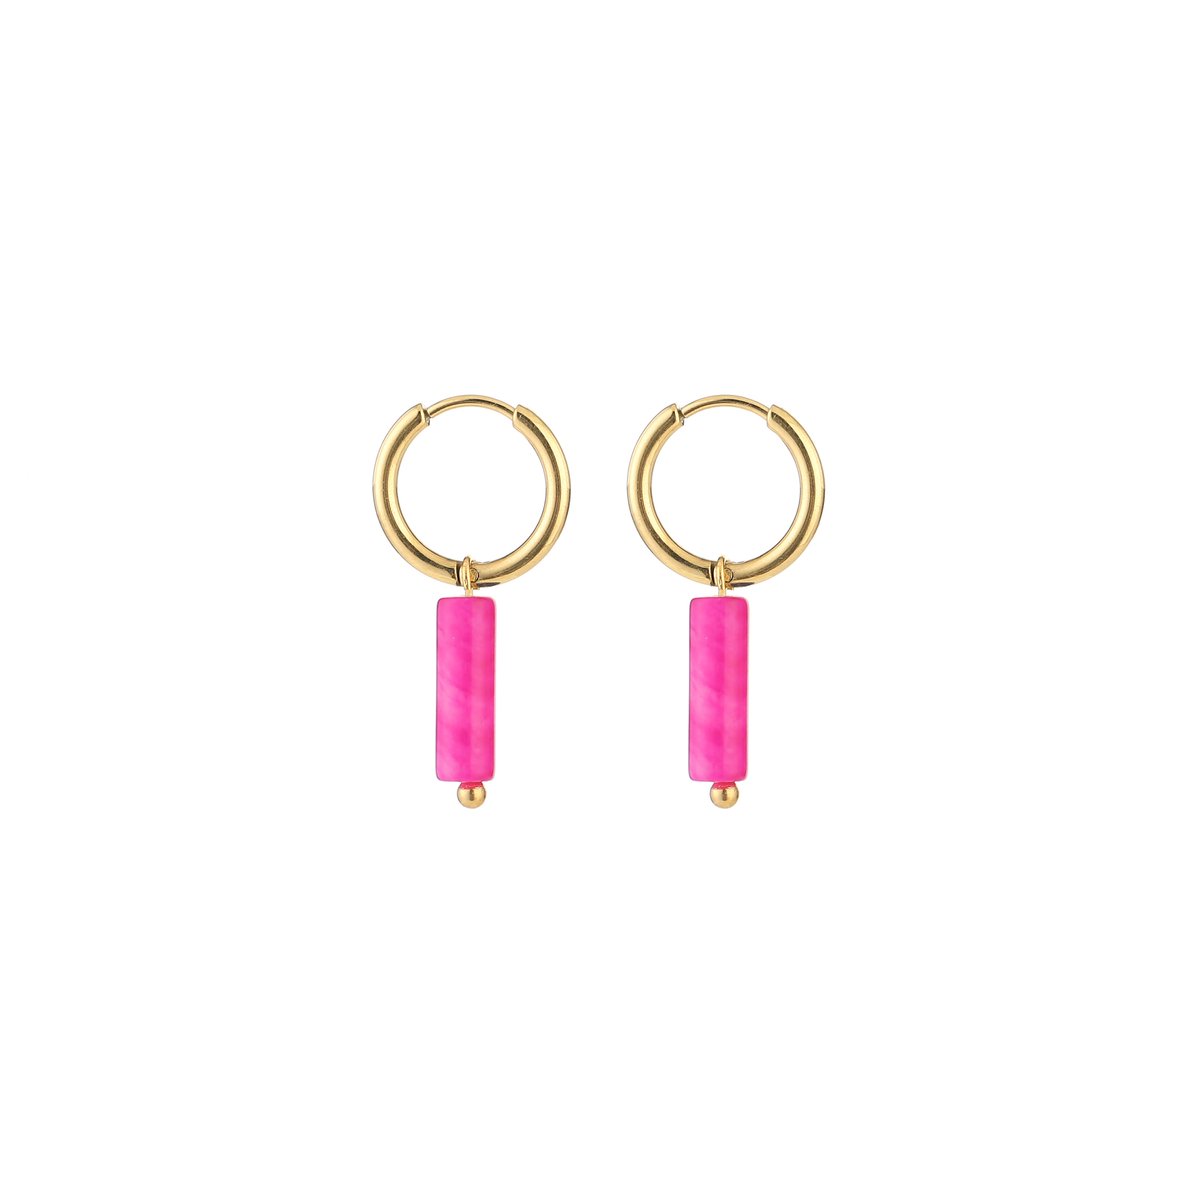 Michelle Bijou, oorbellen, goud, stainless steel, roze hanger